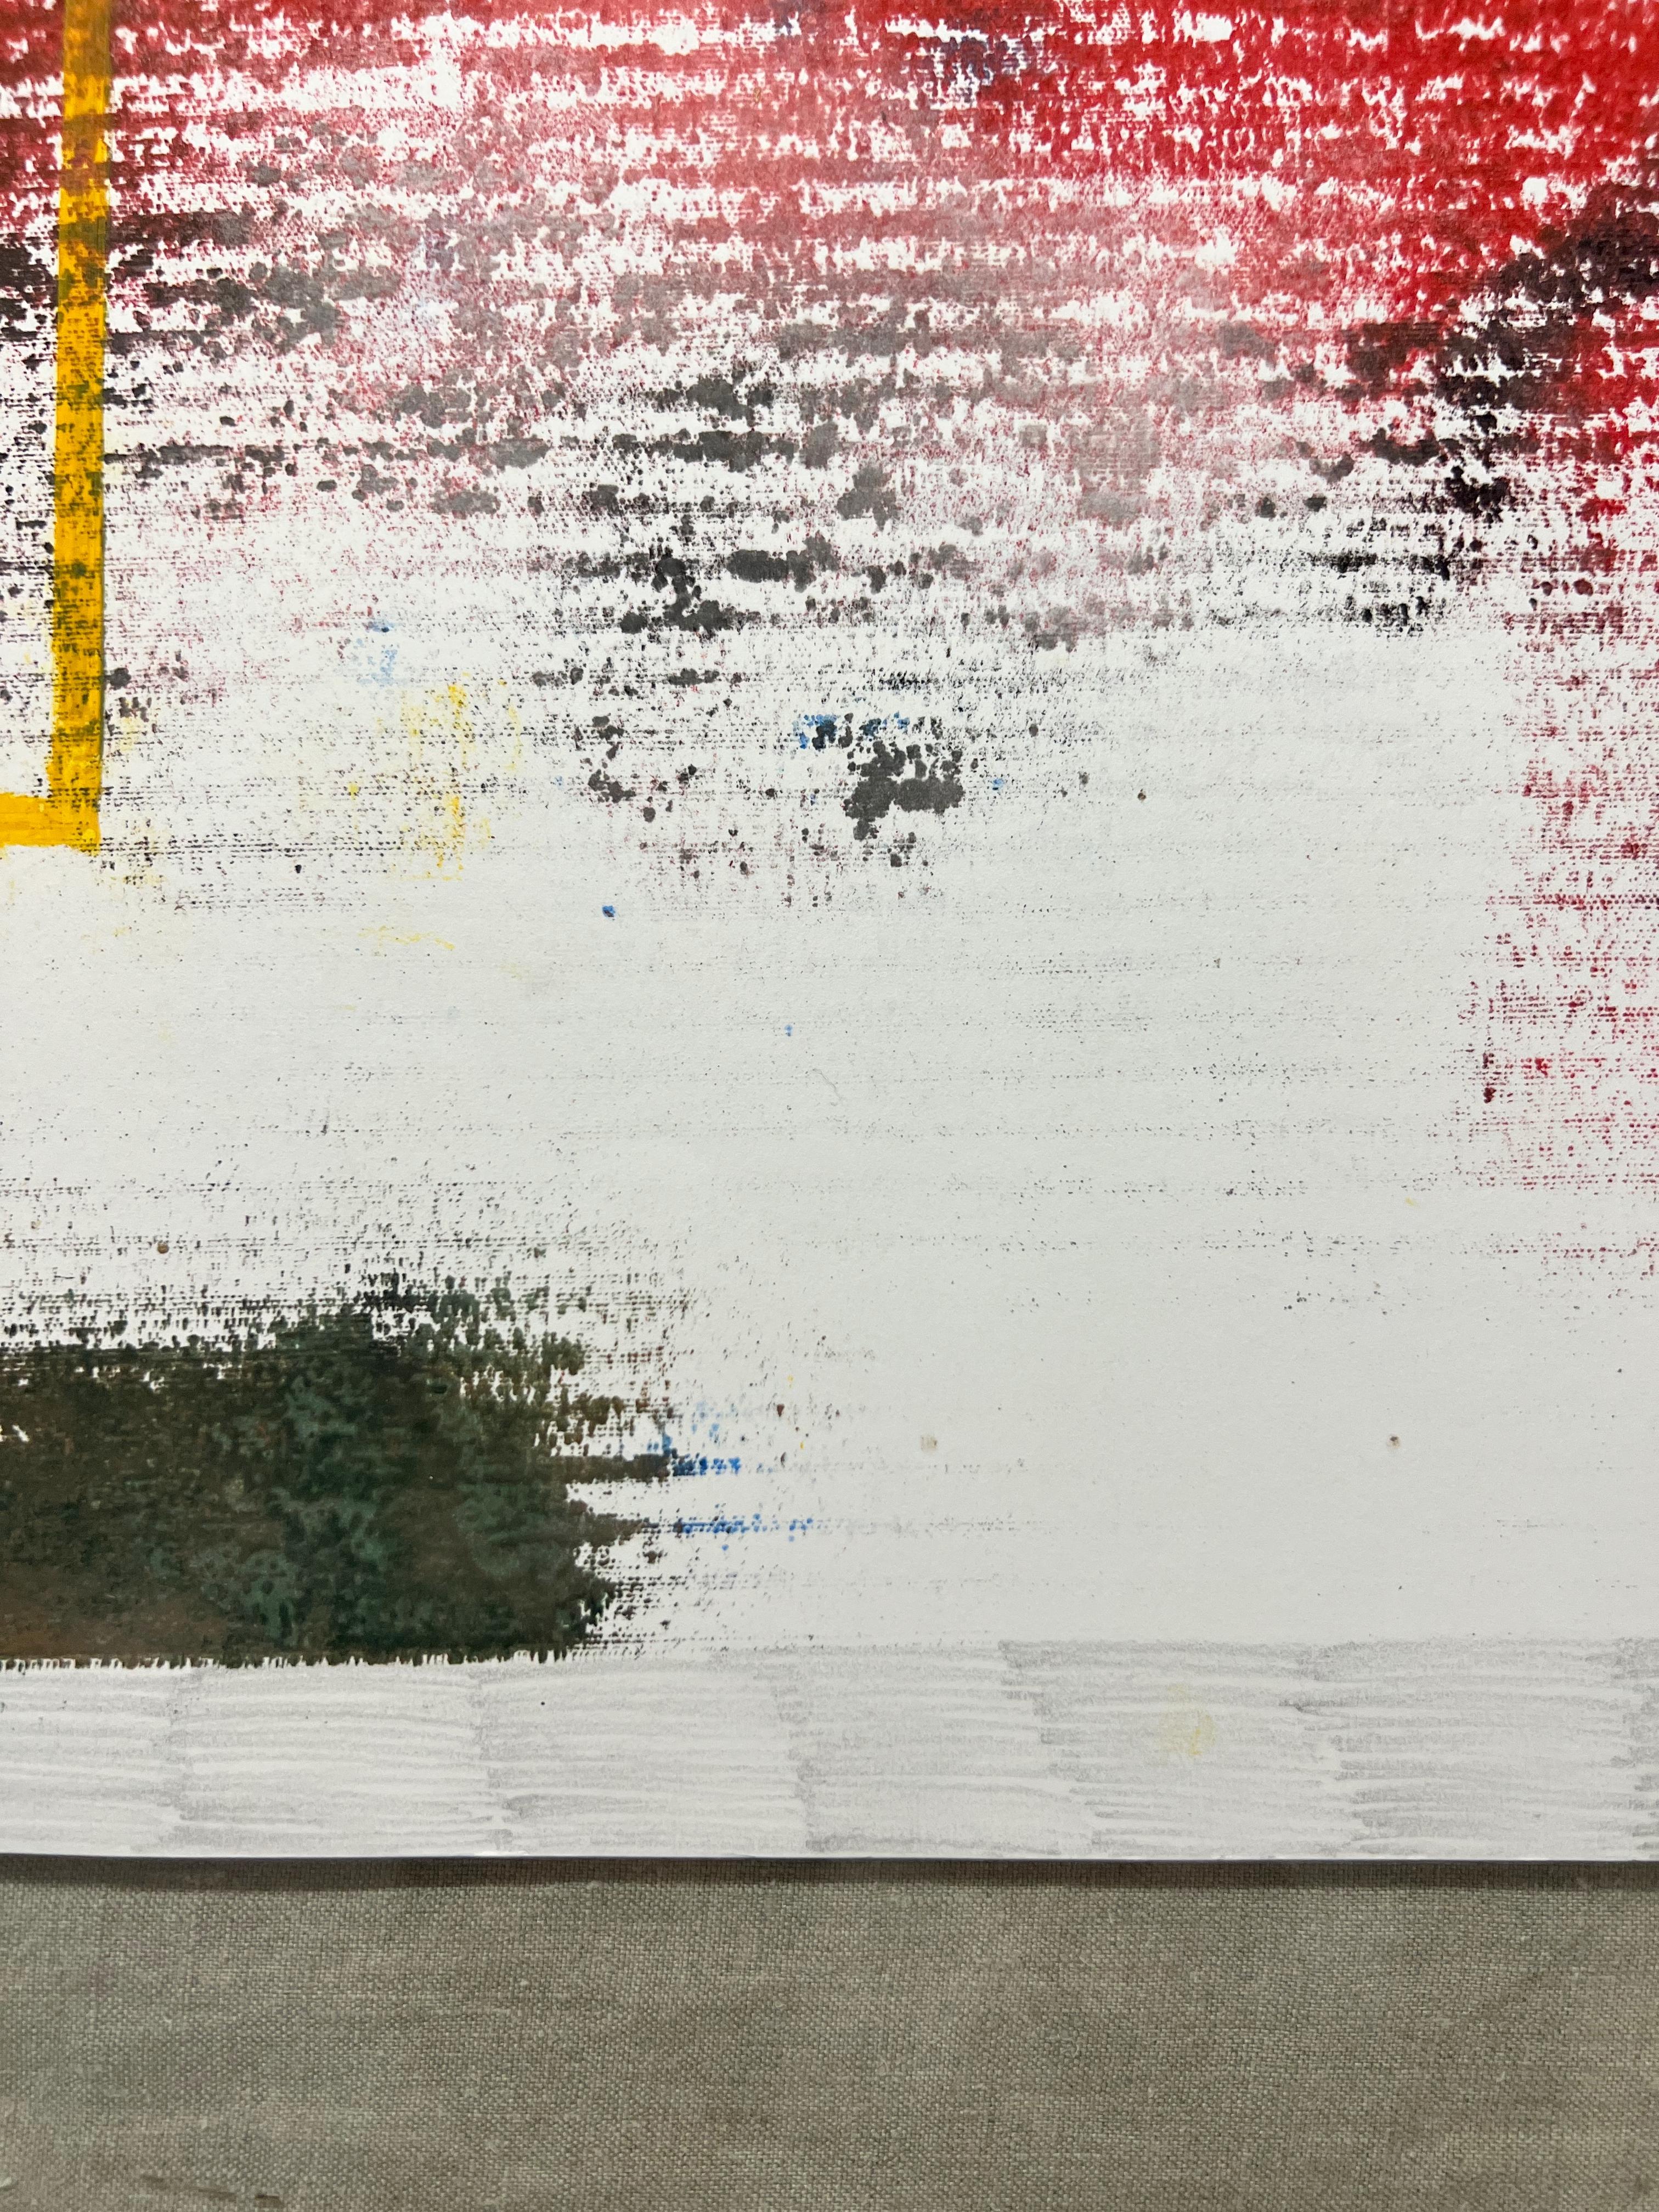 TUSET (1997, La Corogne, Espagne)
Peinture mixte sur papier
Prêt à être encadré
Unique en son genre
Signé au dos 
Comprend un certificat d'authenticité
2021
65 x 50 cm.

Il appartient à la série des journaux personnels de l'artiste pendant la